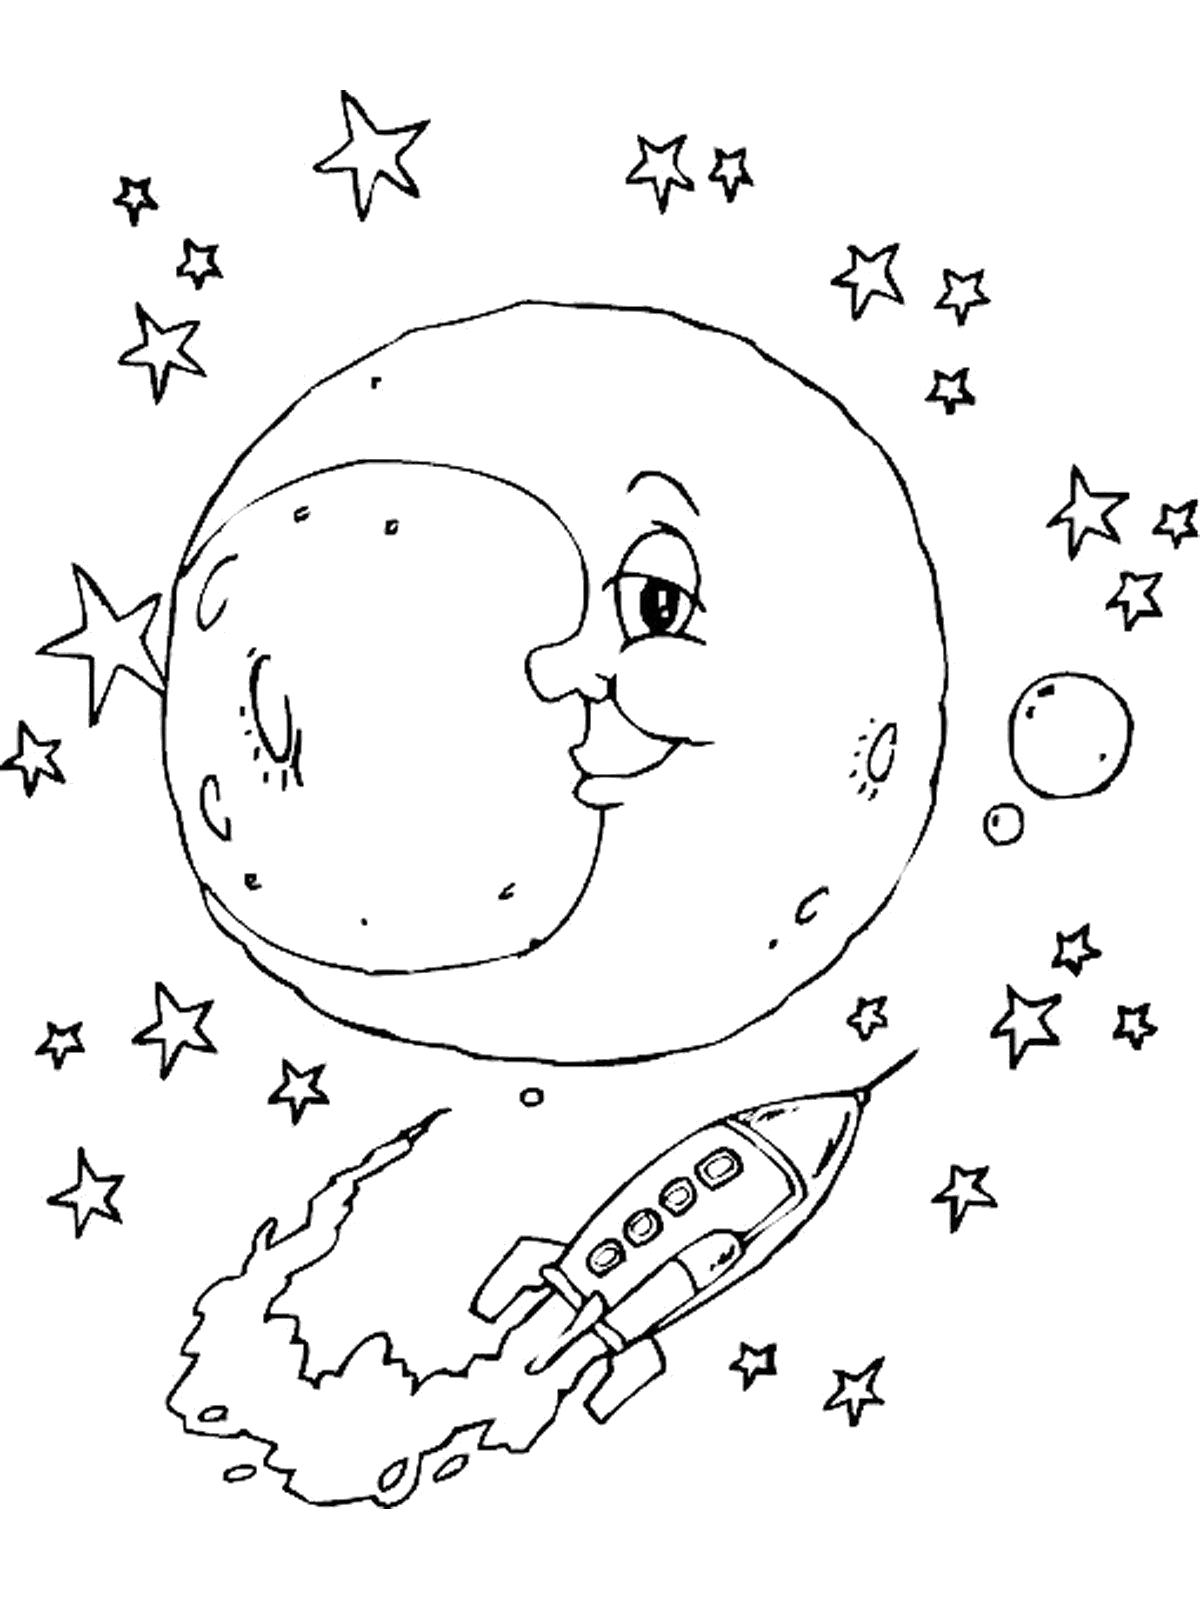 Раскраски к дню космонавтики для детей распечатать. Раскраска. В космосе. Космос раскраска для детей. Раскраска космос и планеты. Луна раскраска.